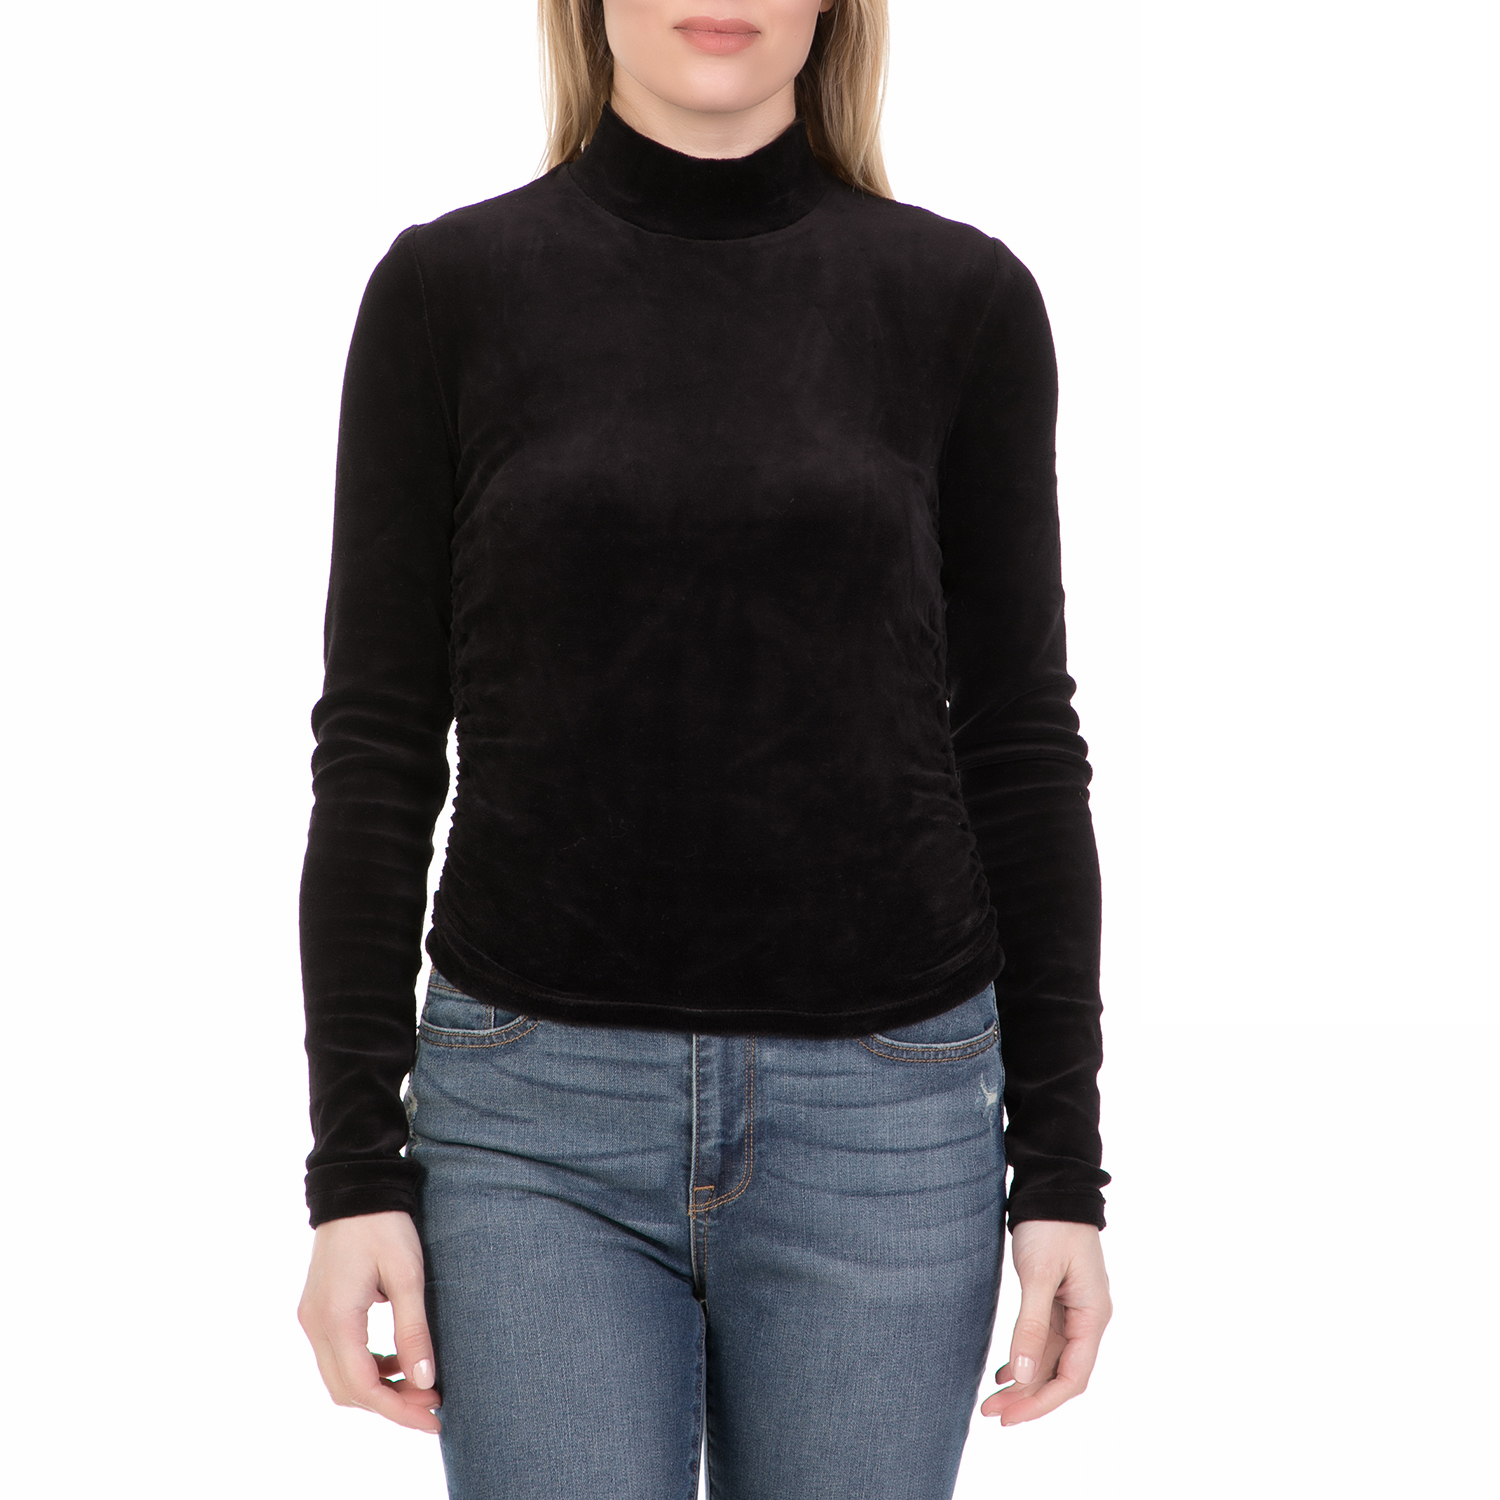 Γυναικεία/Ρούχα/Μπλούζες/Μακρυμάνικες JUICY COUTURE - Γυναικεία μπλούζα με ζιβάγκο STRETCH VELOUR JUICY COUTURE μαύρη